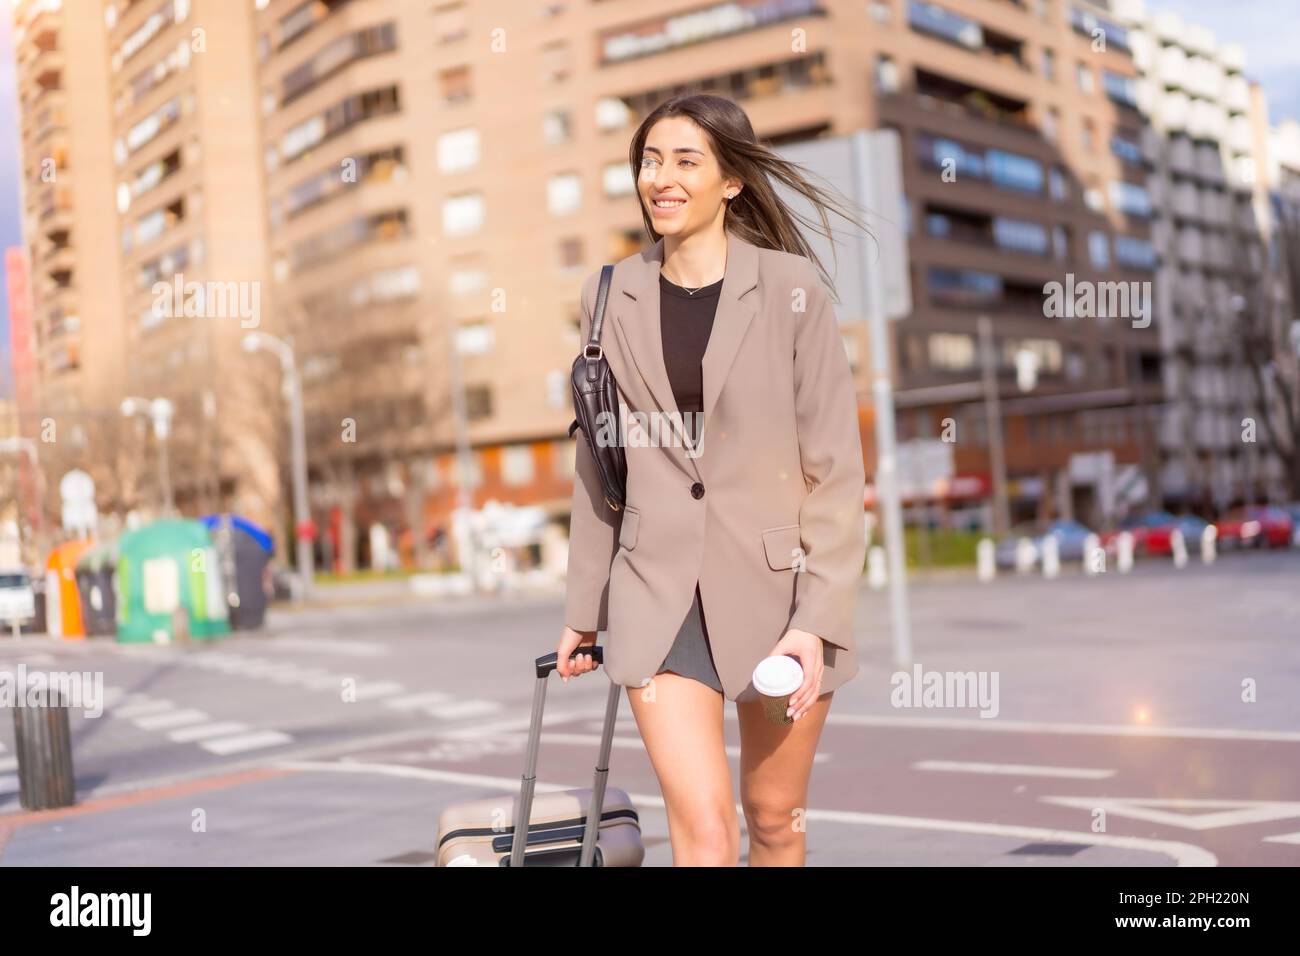 Une jolie femme caucasienne sous un manteau portant une valise et marchant  dans un paysage urbain animé Photo Stock - Alamy